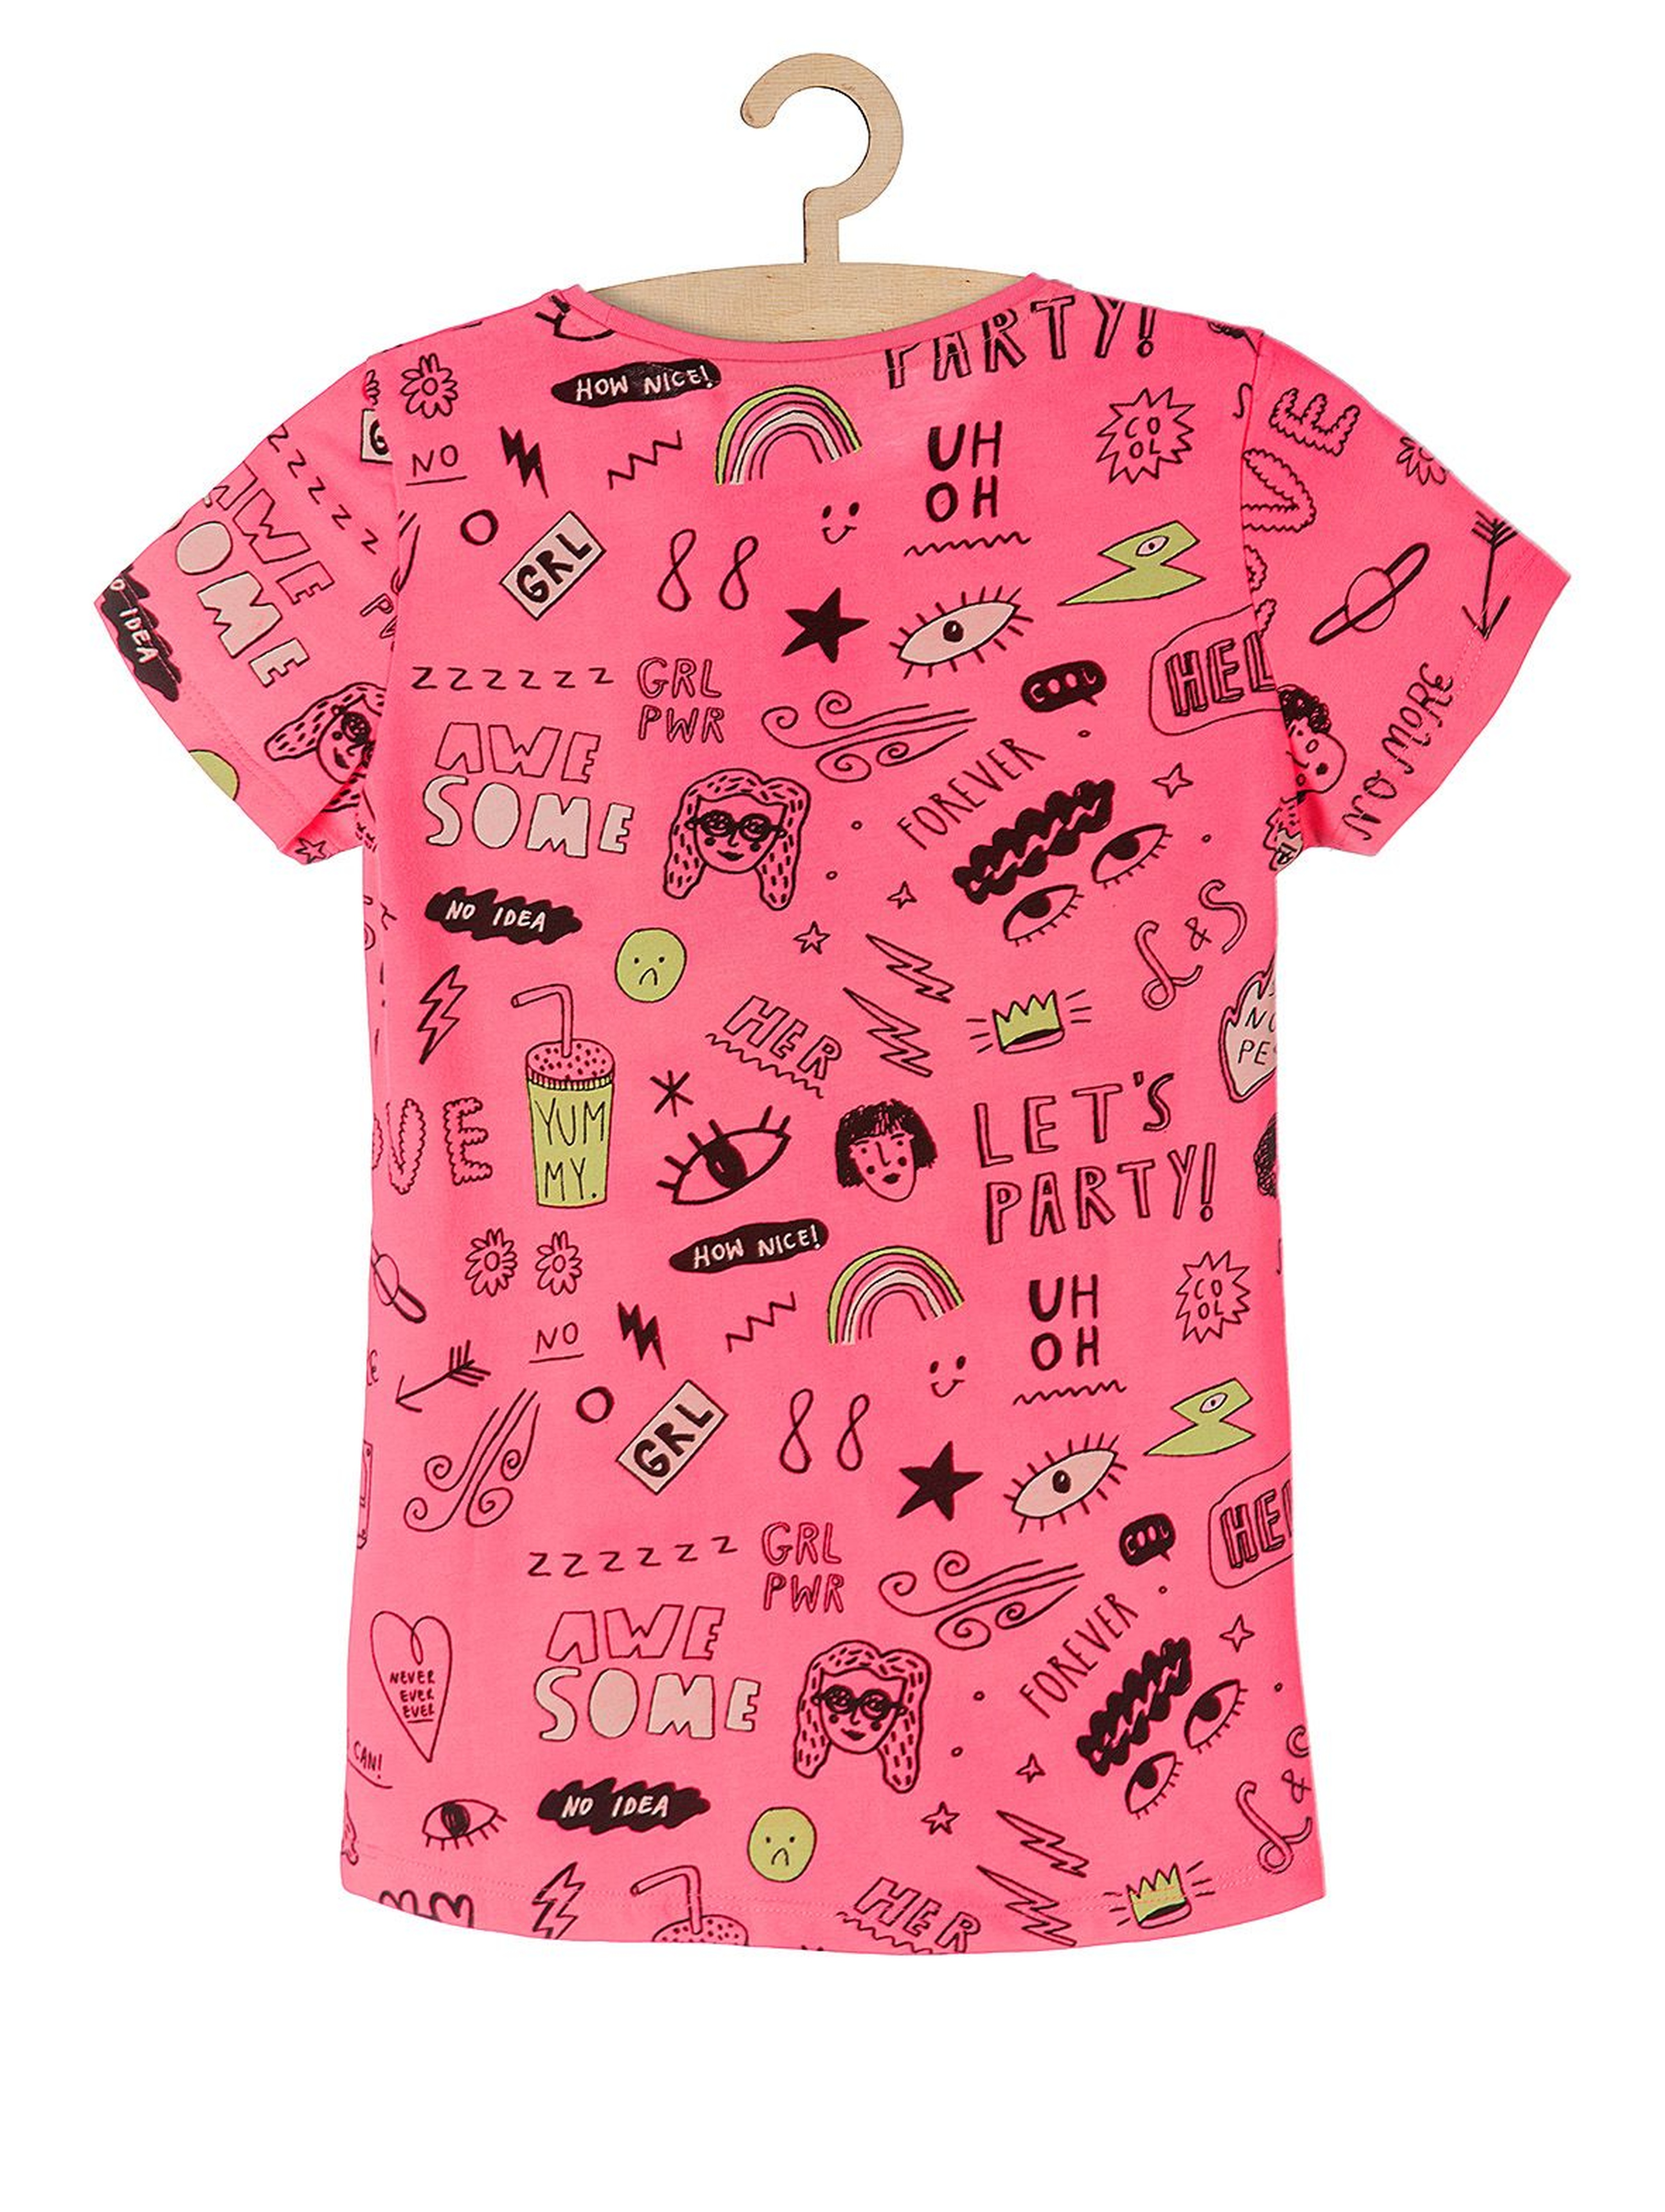 T-shirt dla dziewczynki- różowa z nadrukami